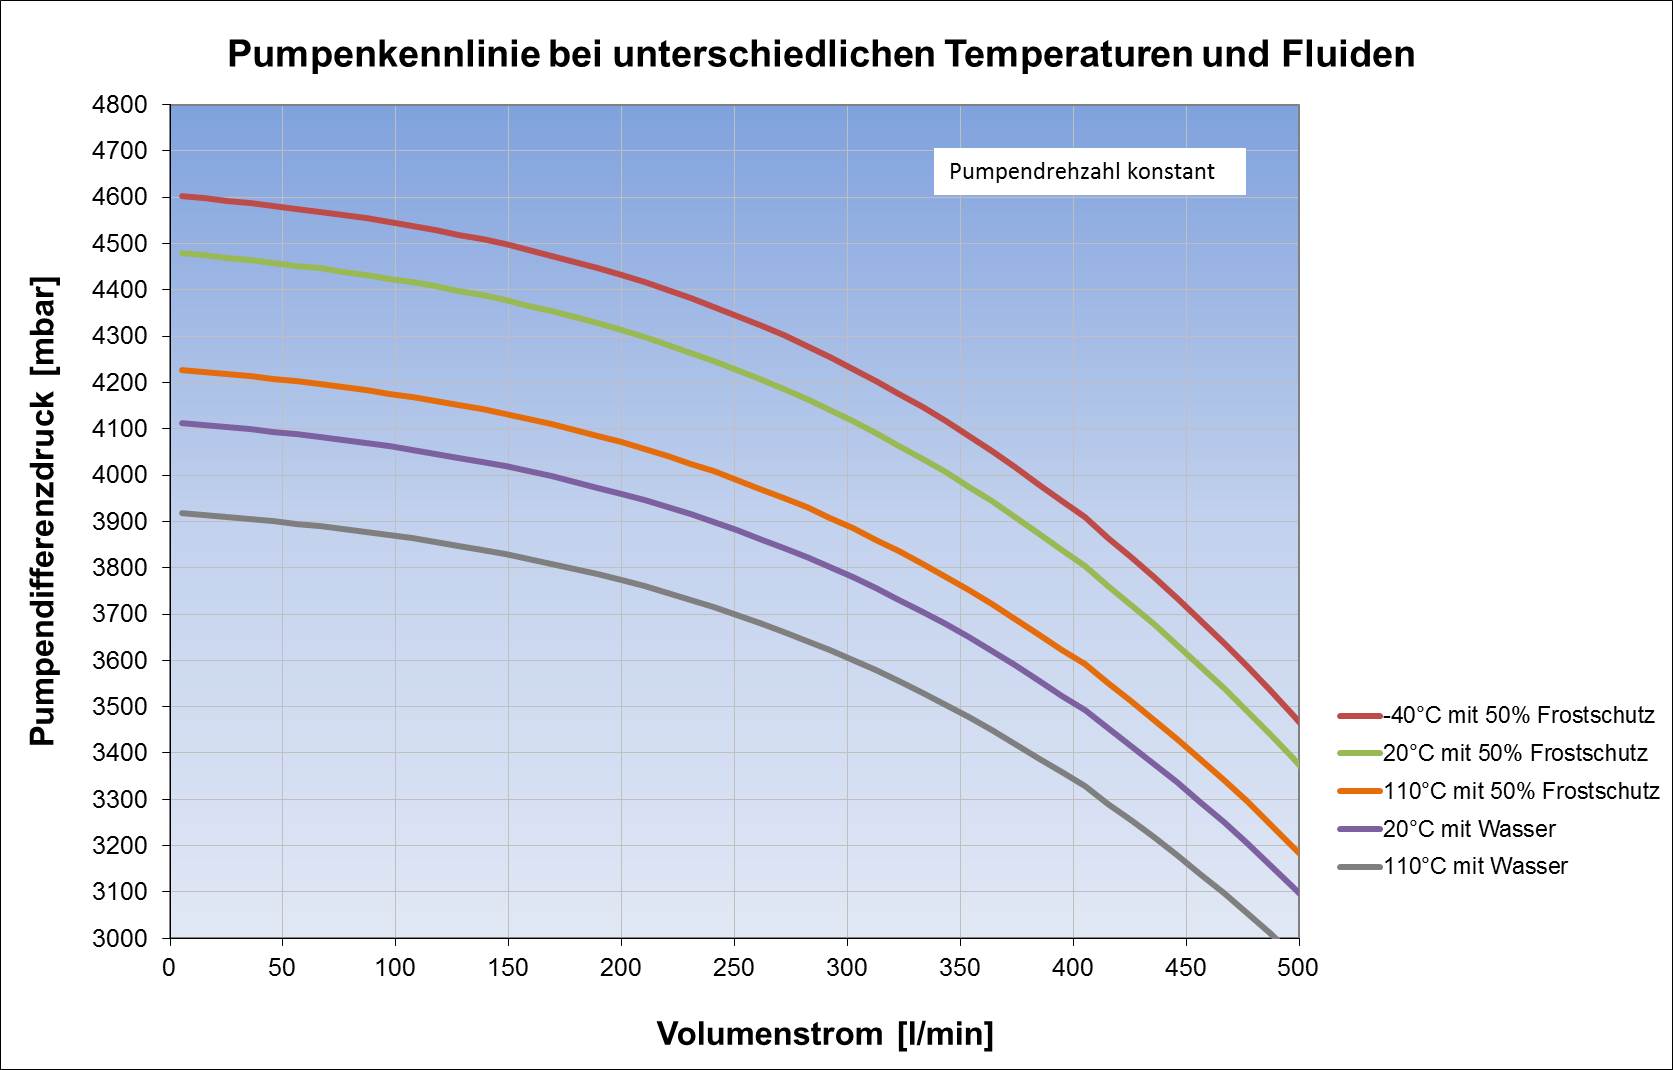 Pumpenkennlinie bei konstanter Drehzahl und unterschiedlichen Temperaturen und Fluiden